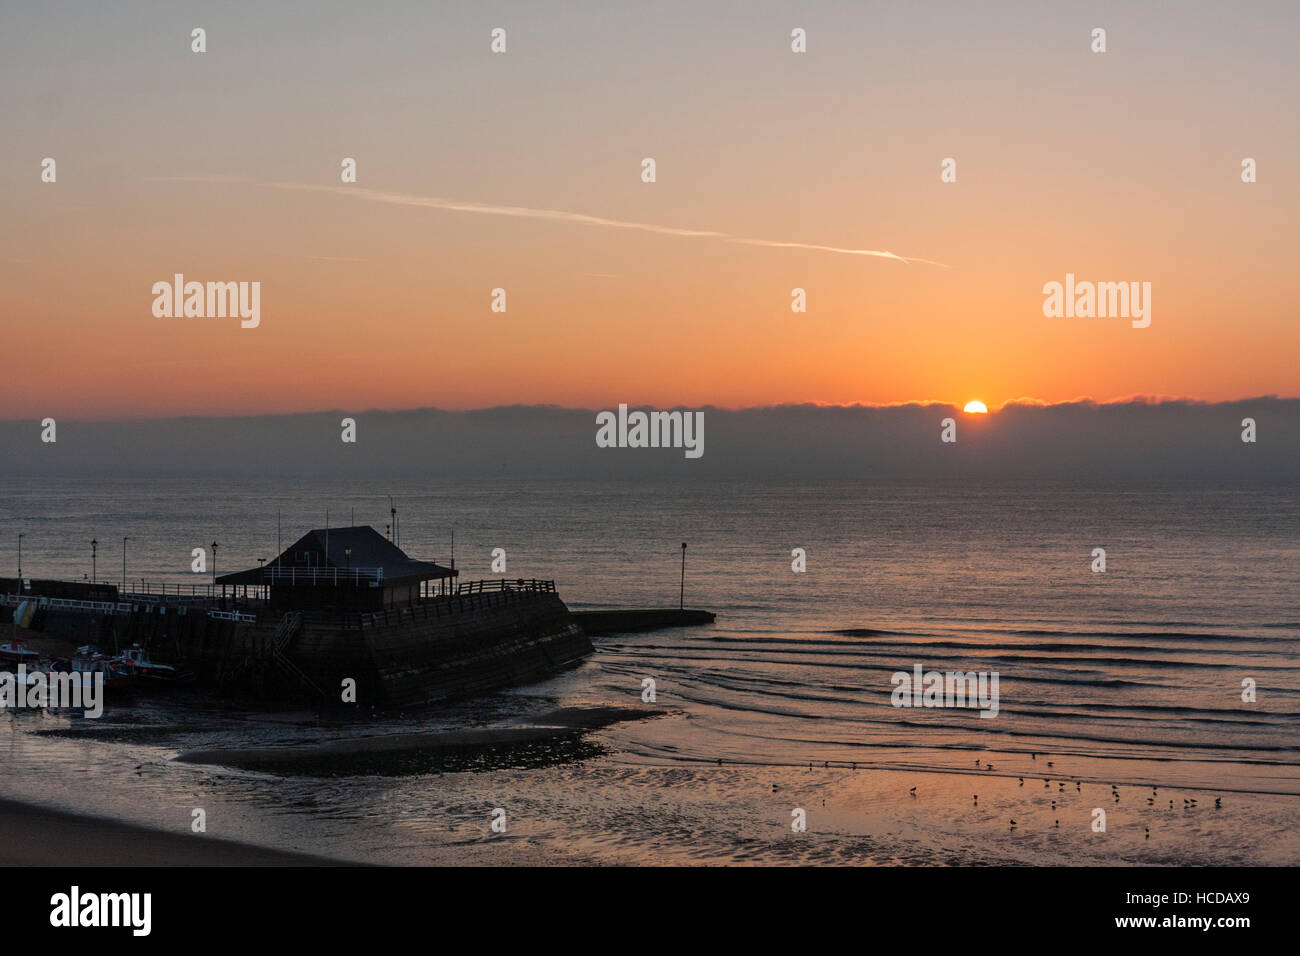 Inghilterra, Broadstairs. Dawn, sunrise la rottura oltre il Canale della Manica e il porto di silhouette. Foto Stock